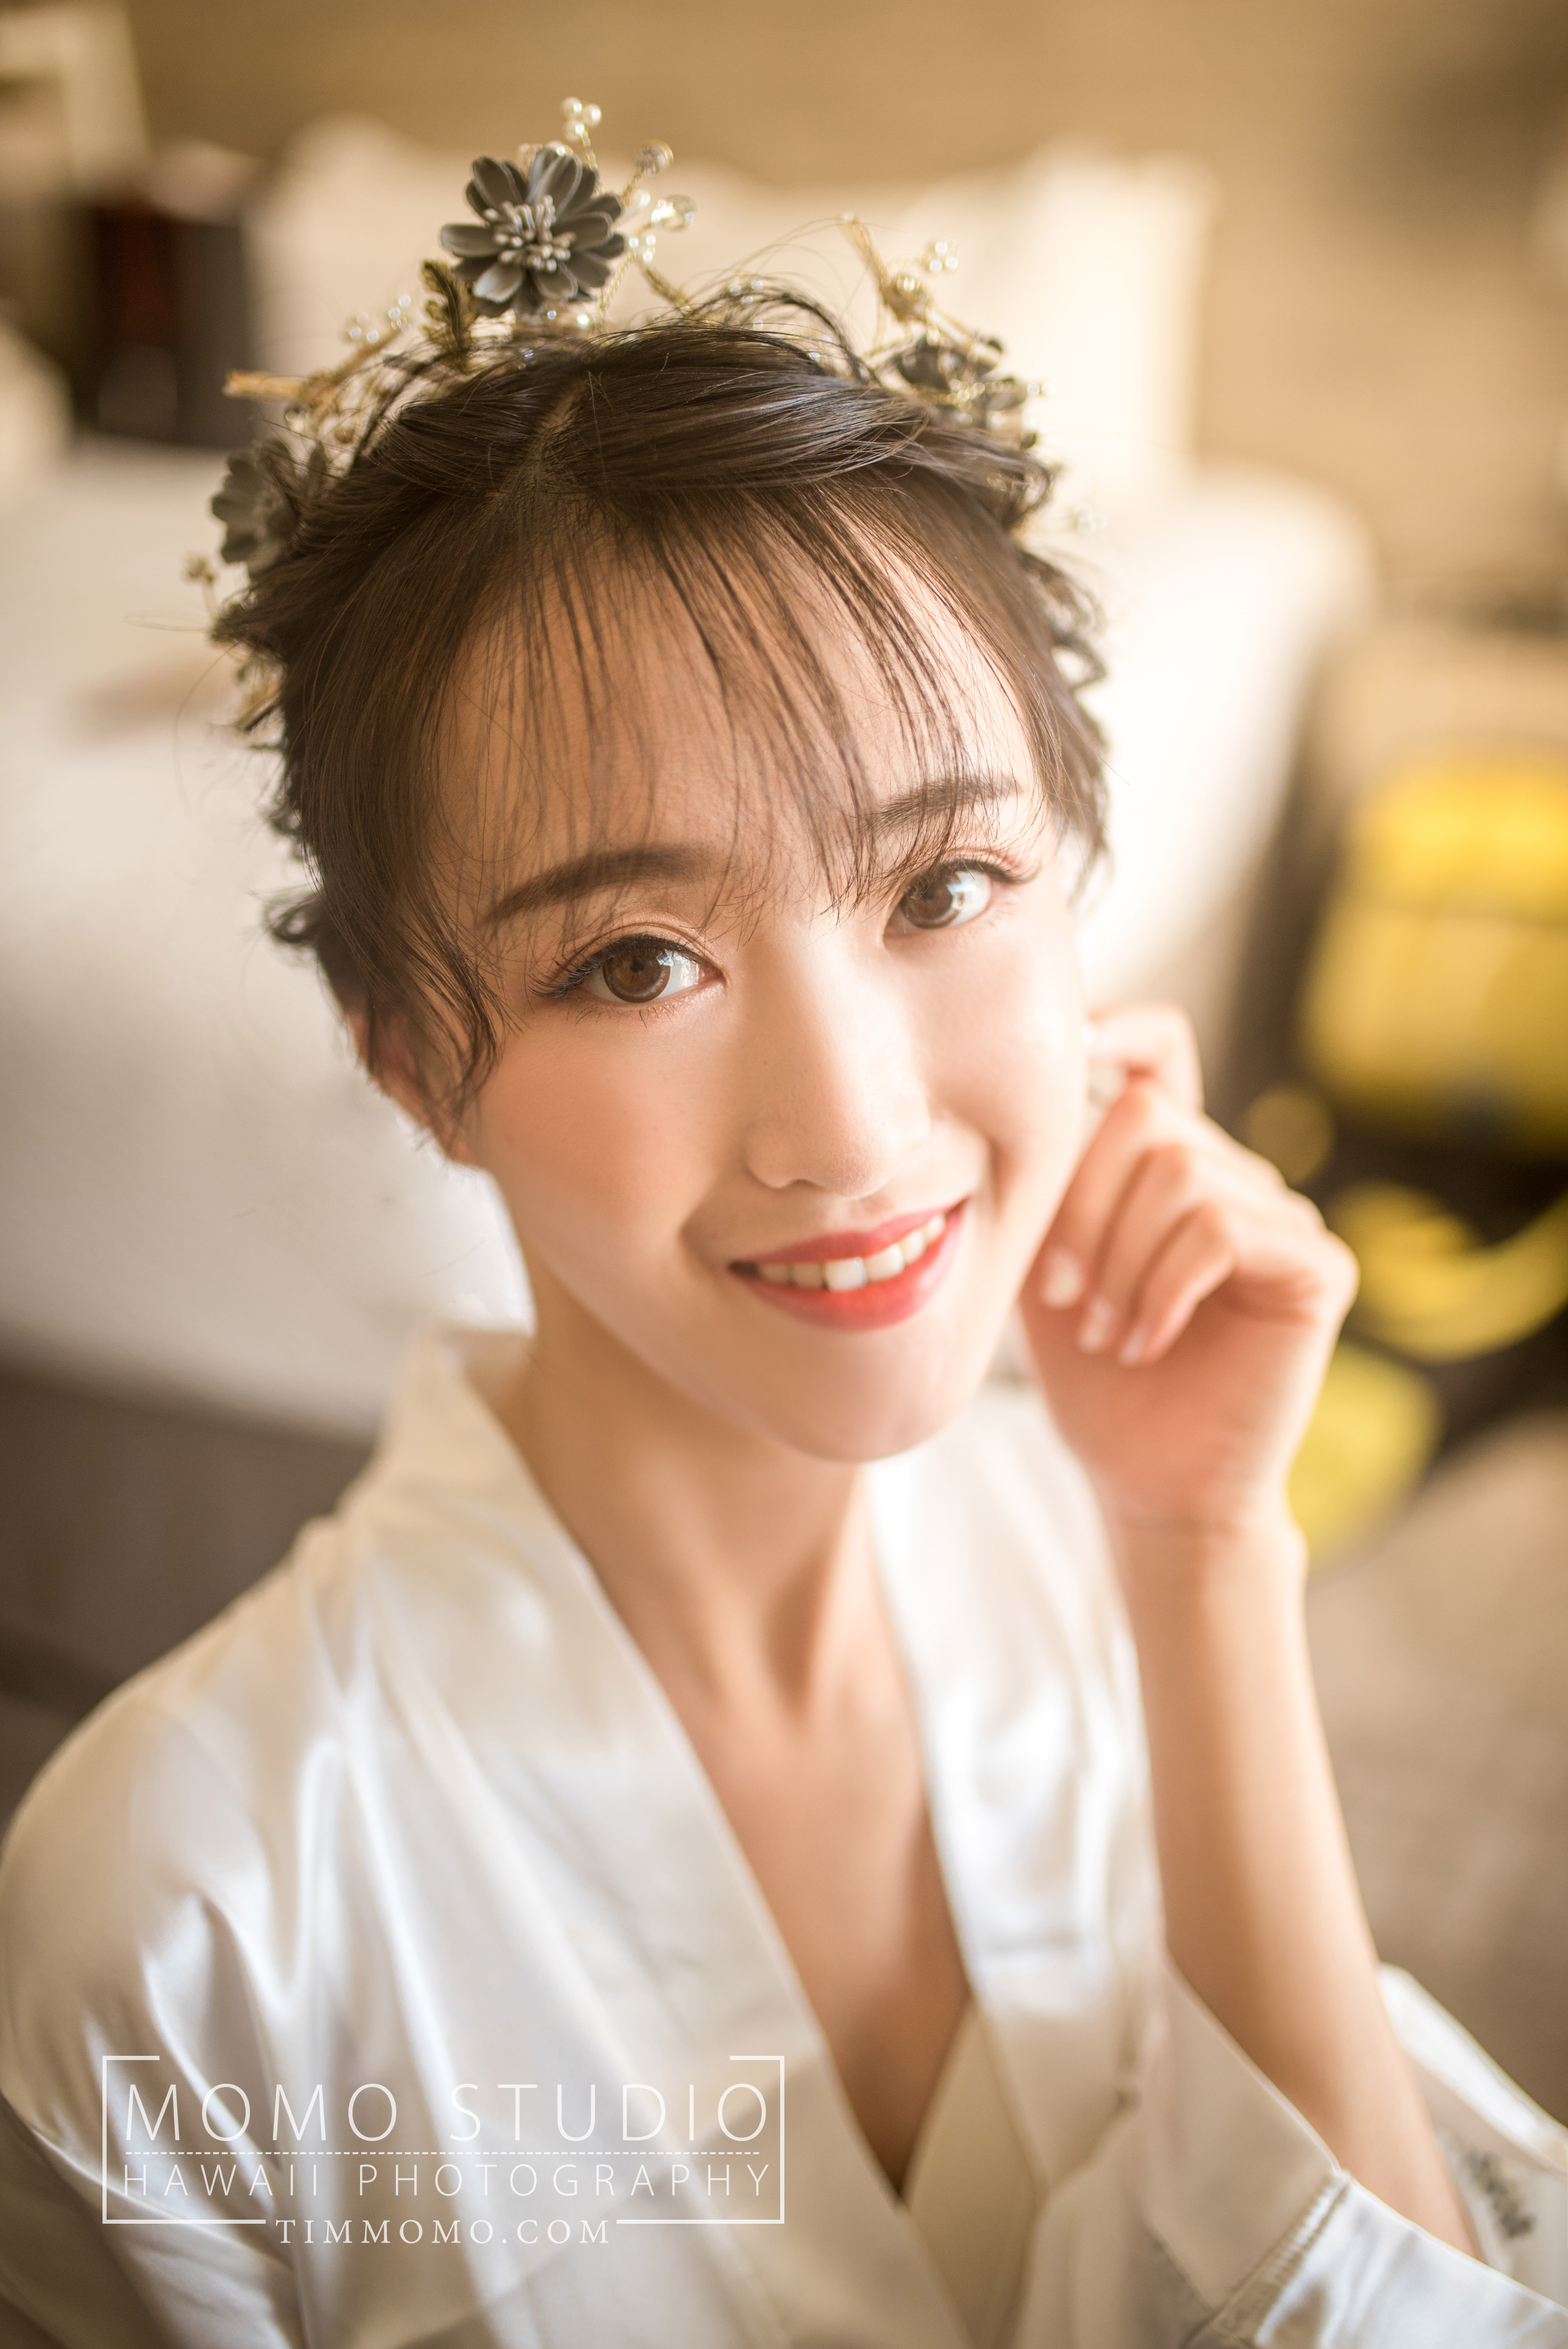 韩先生 赵小姐 - 每日客照 - 广州婚纱摄影-广州古摄影官网